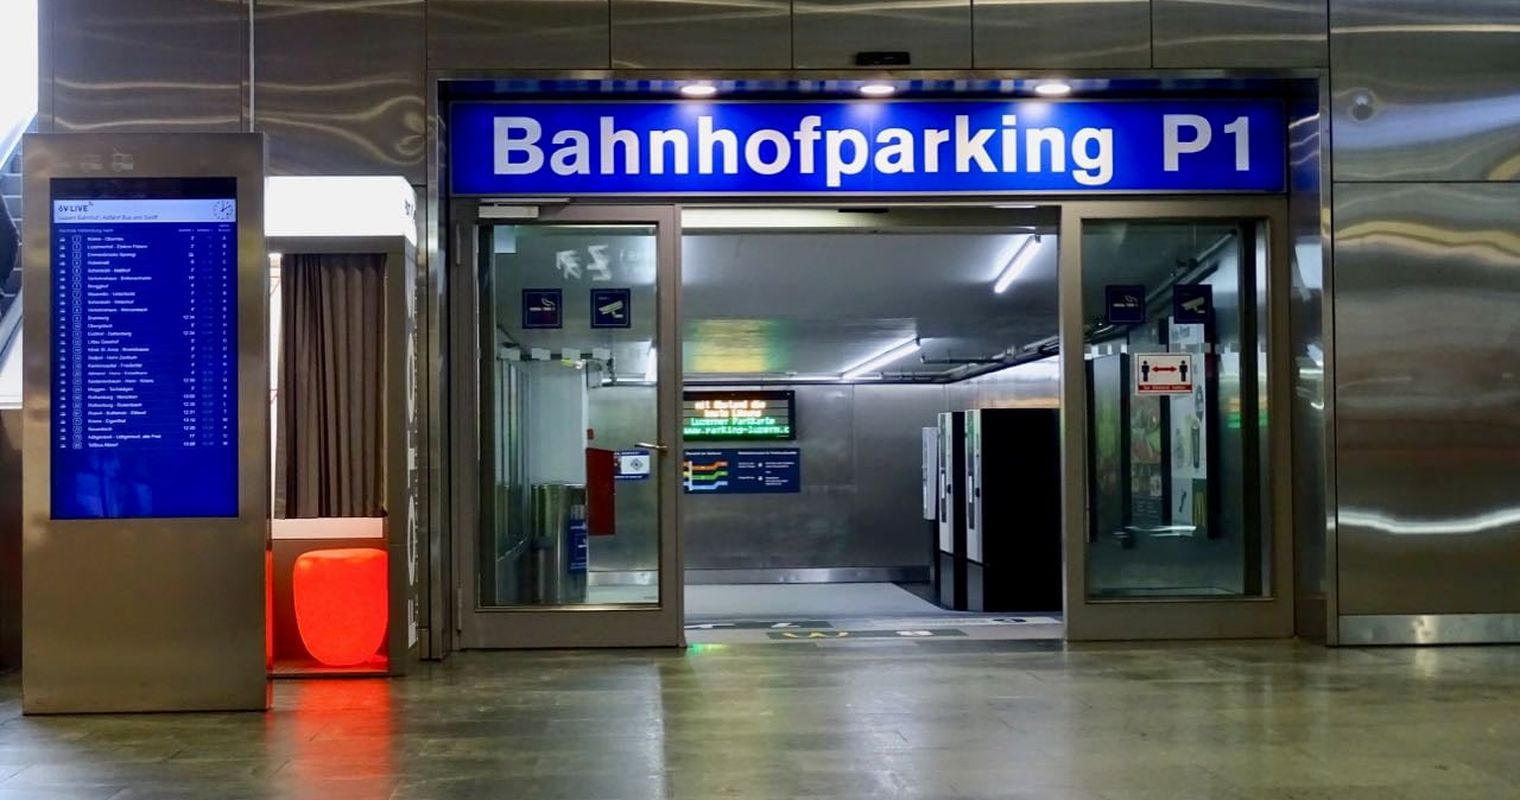 Bahnhof Luzern: Parking-Aus hat politisches Nachspiel